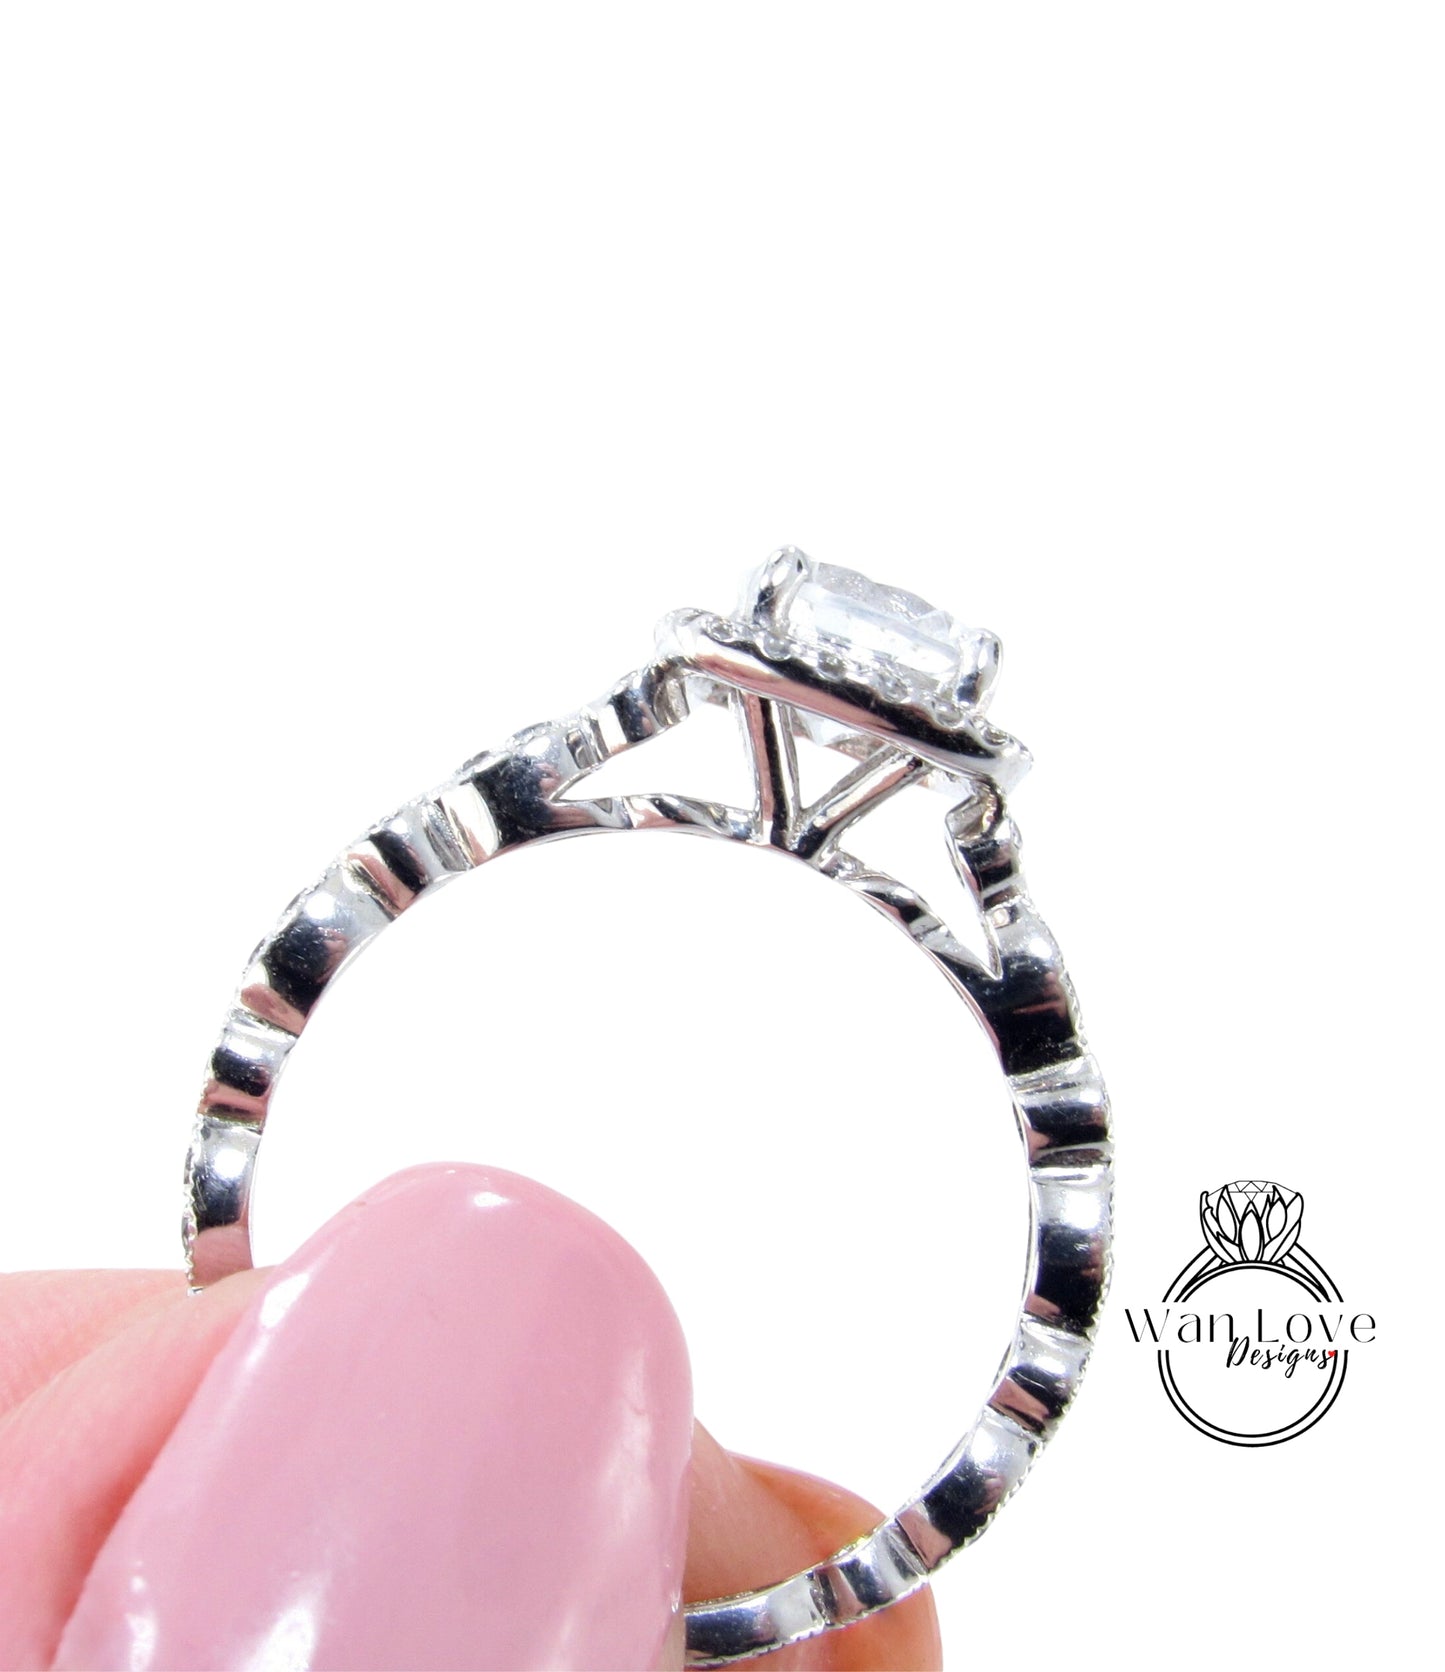 Round Halo Gray Moissanite Engagement Ring, Diamond/Moissanite Halo Wedding Ring, Scalloped Leaf Diamond Milgrain Shank Band Custom Ring, 14k/18k Gold Wan Love Designs